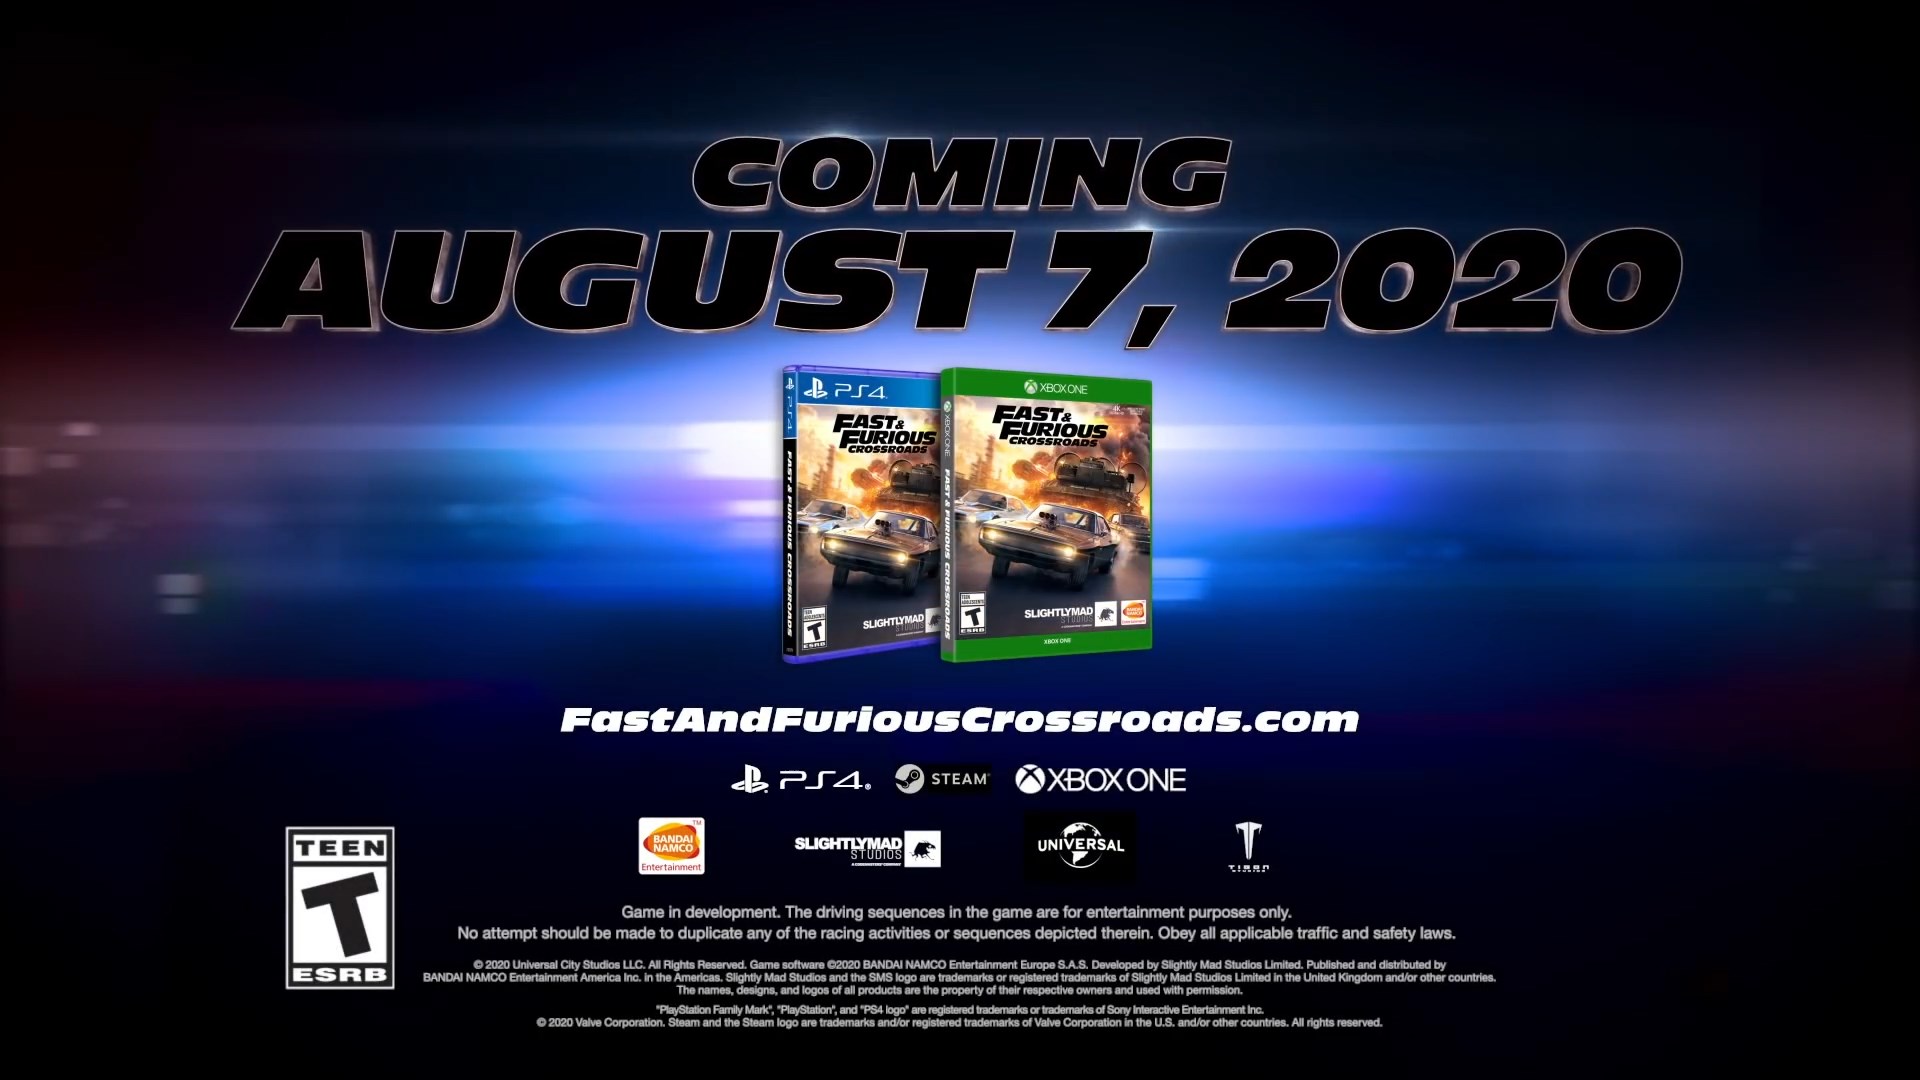  Fast & Furious Crossroads - PlayStation 4 : Bandai Namco Games  Amer, Namco: Video Games